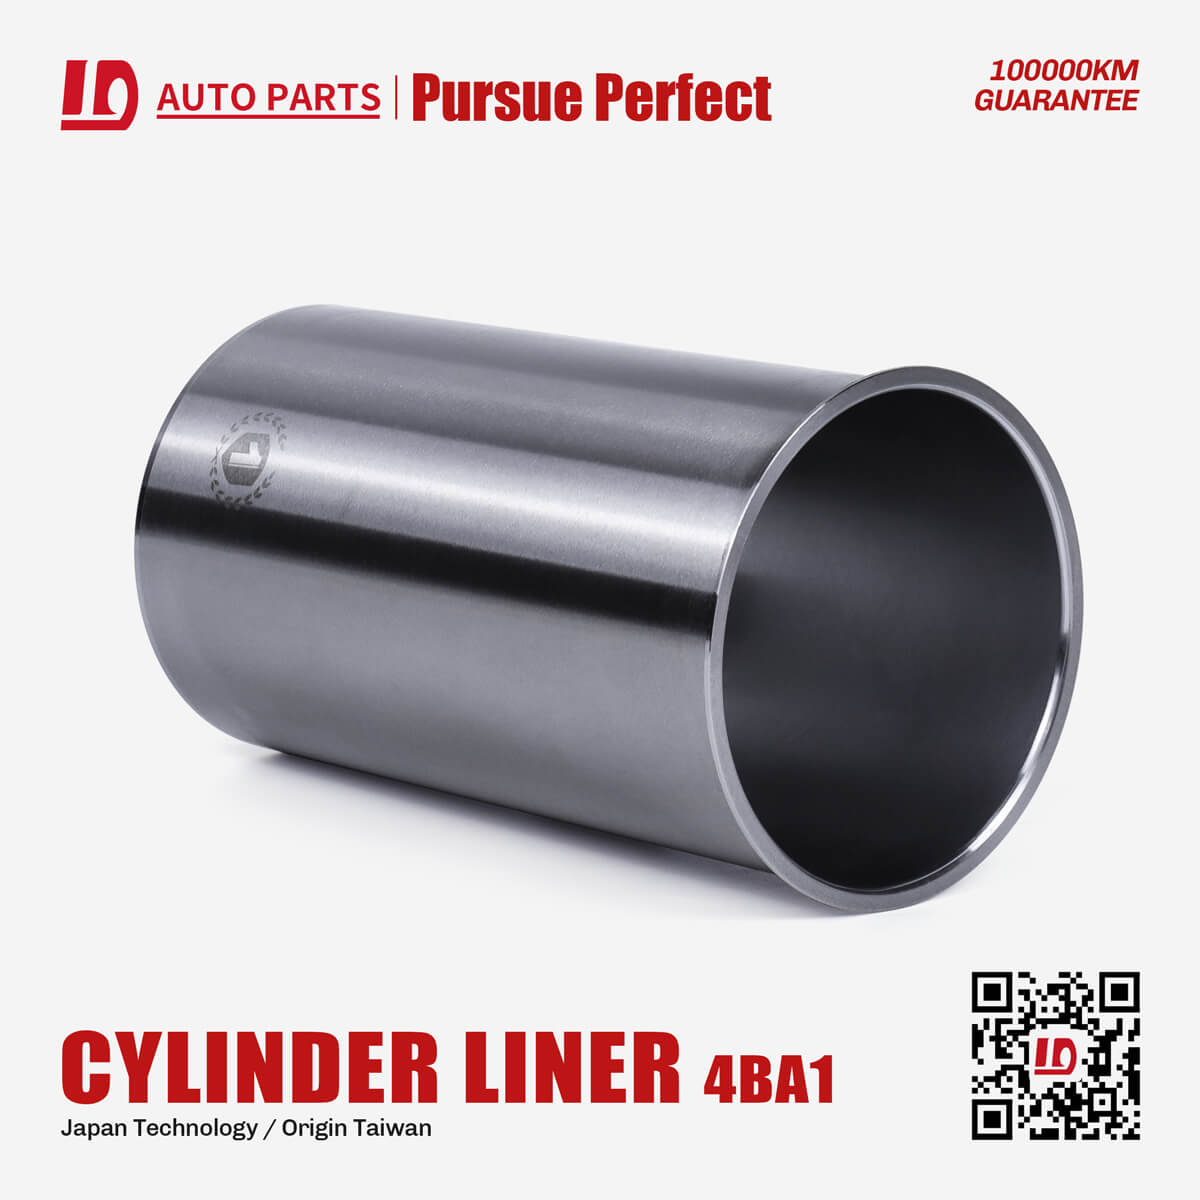 4BA1 diesel engine parts cylinder liner OEM:9-11162-802-0 cylinder liner